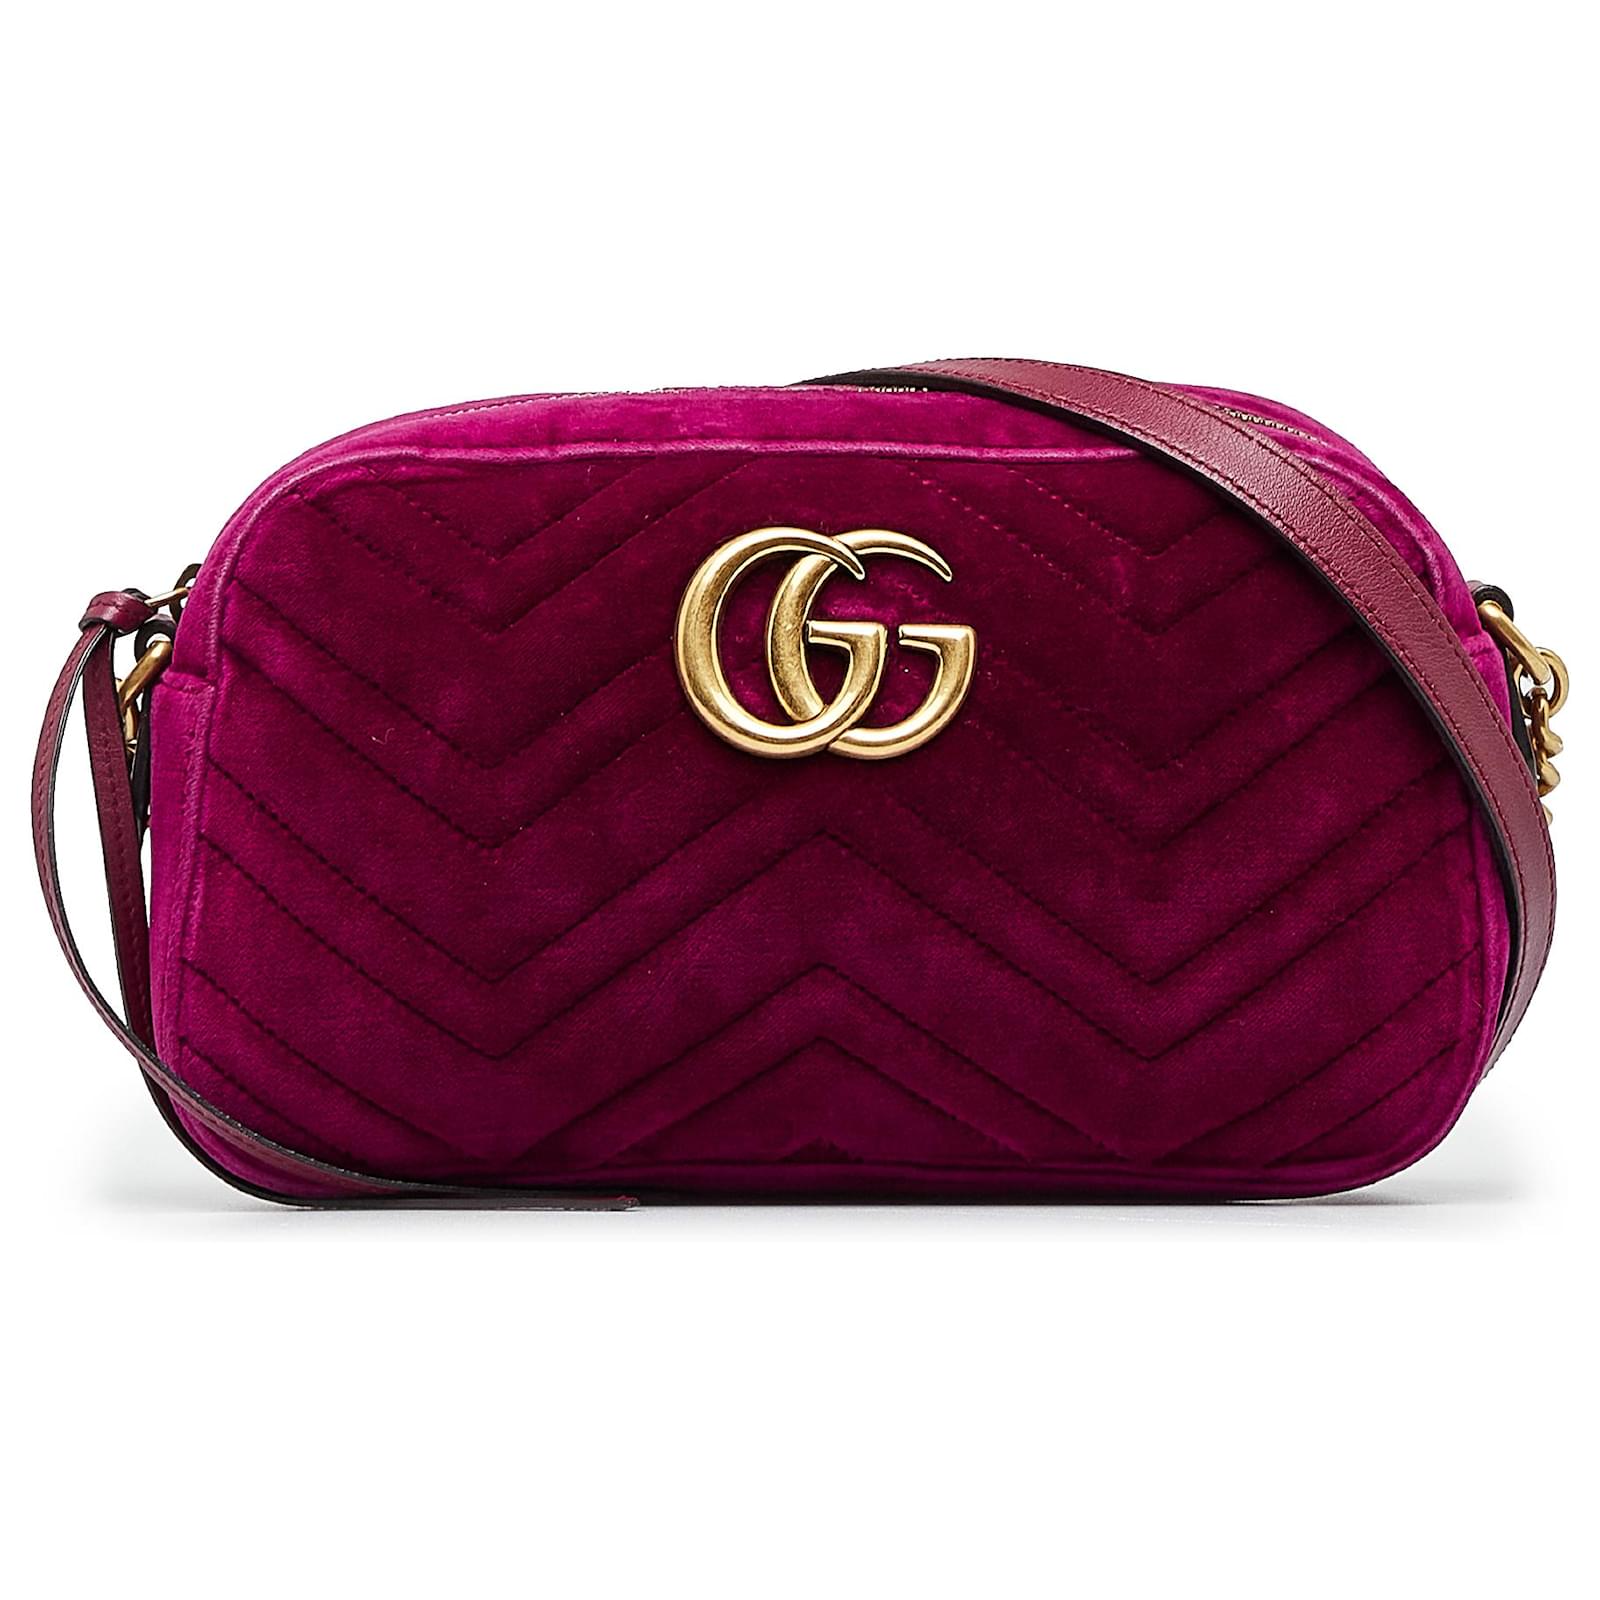 Gg marmont chain matelasse velvet handbag Gucci Pink in Velvet